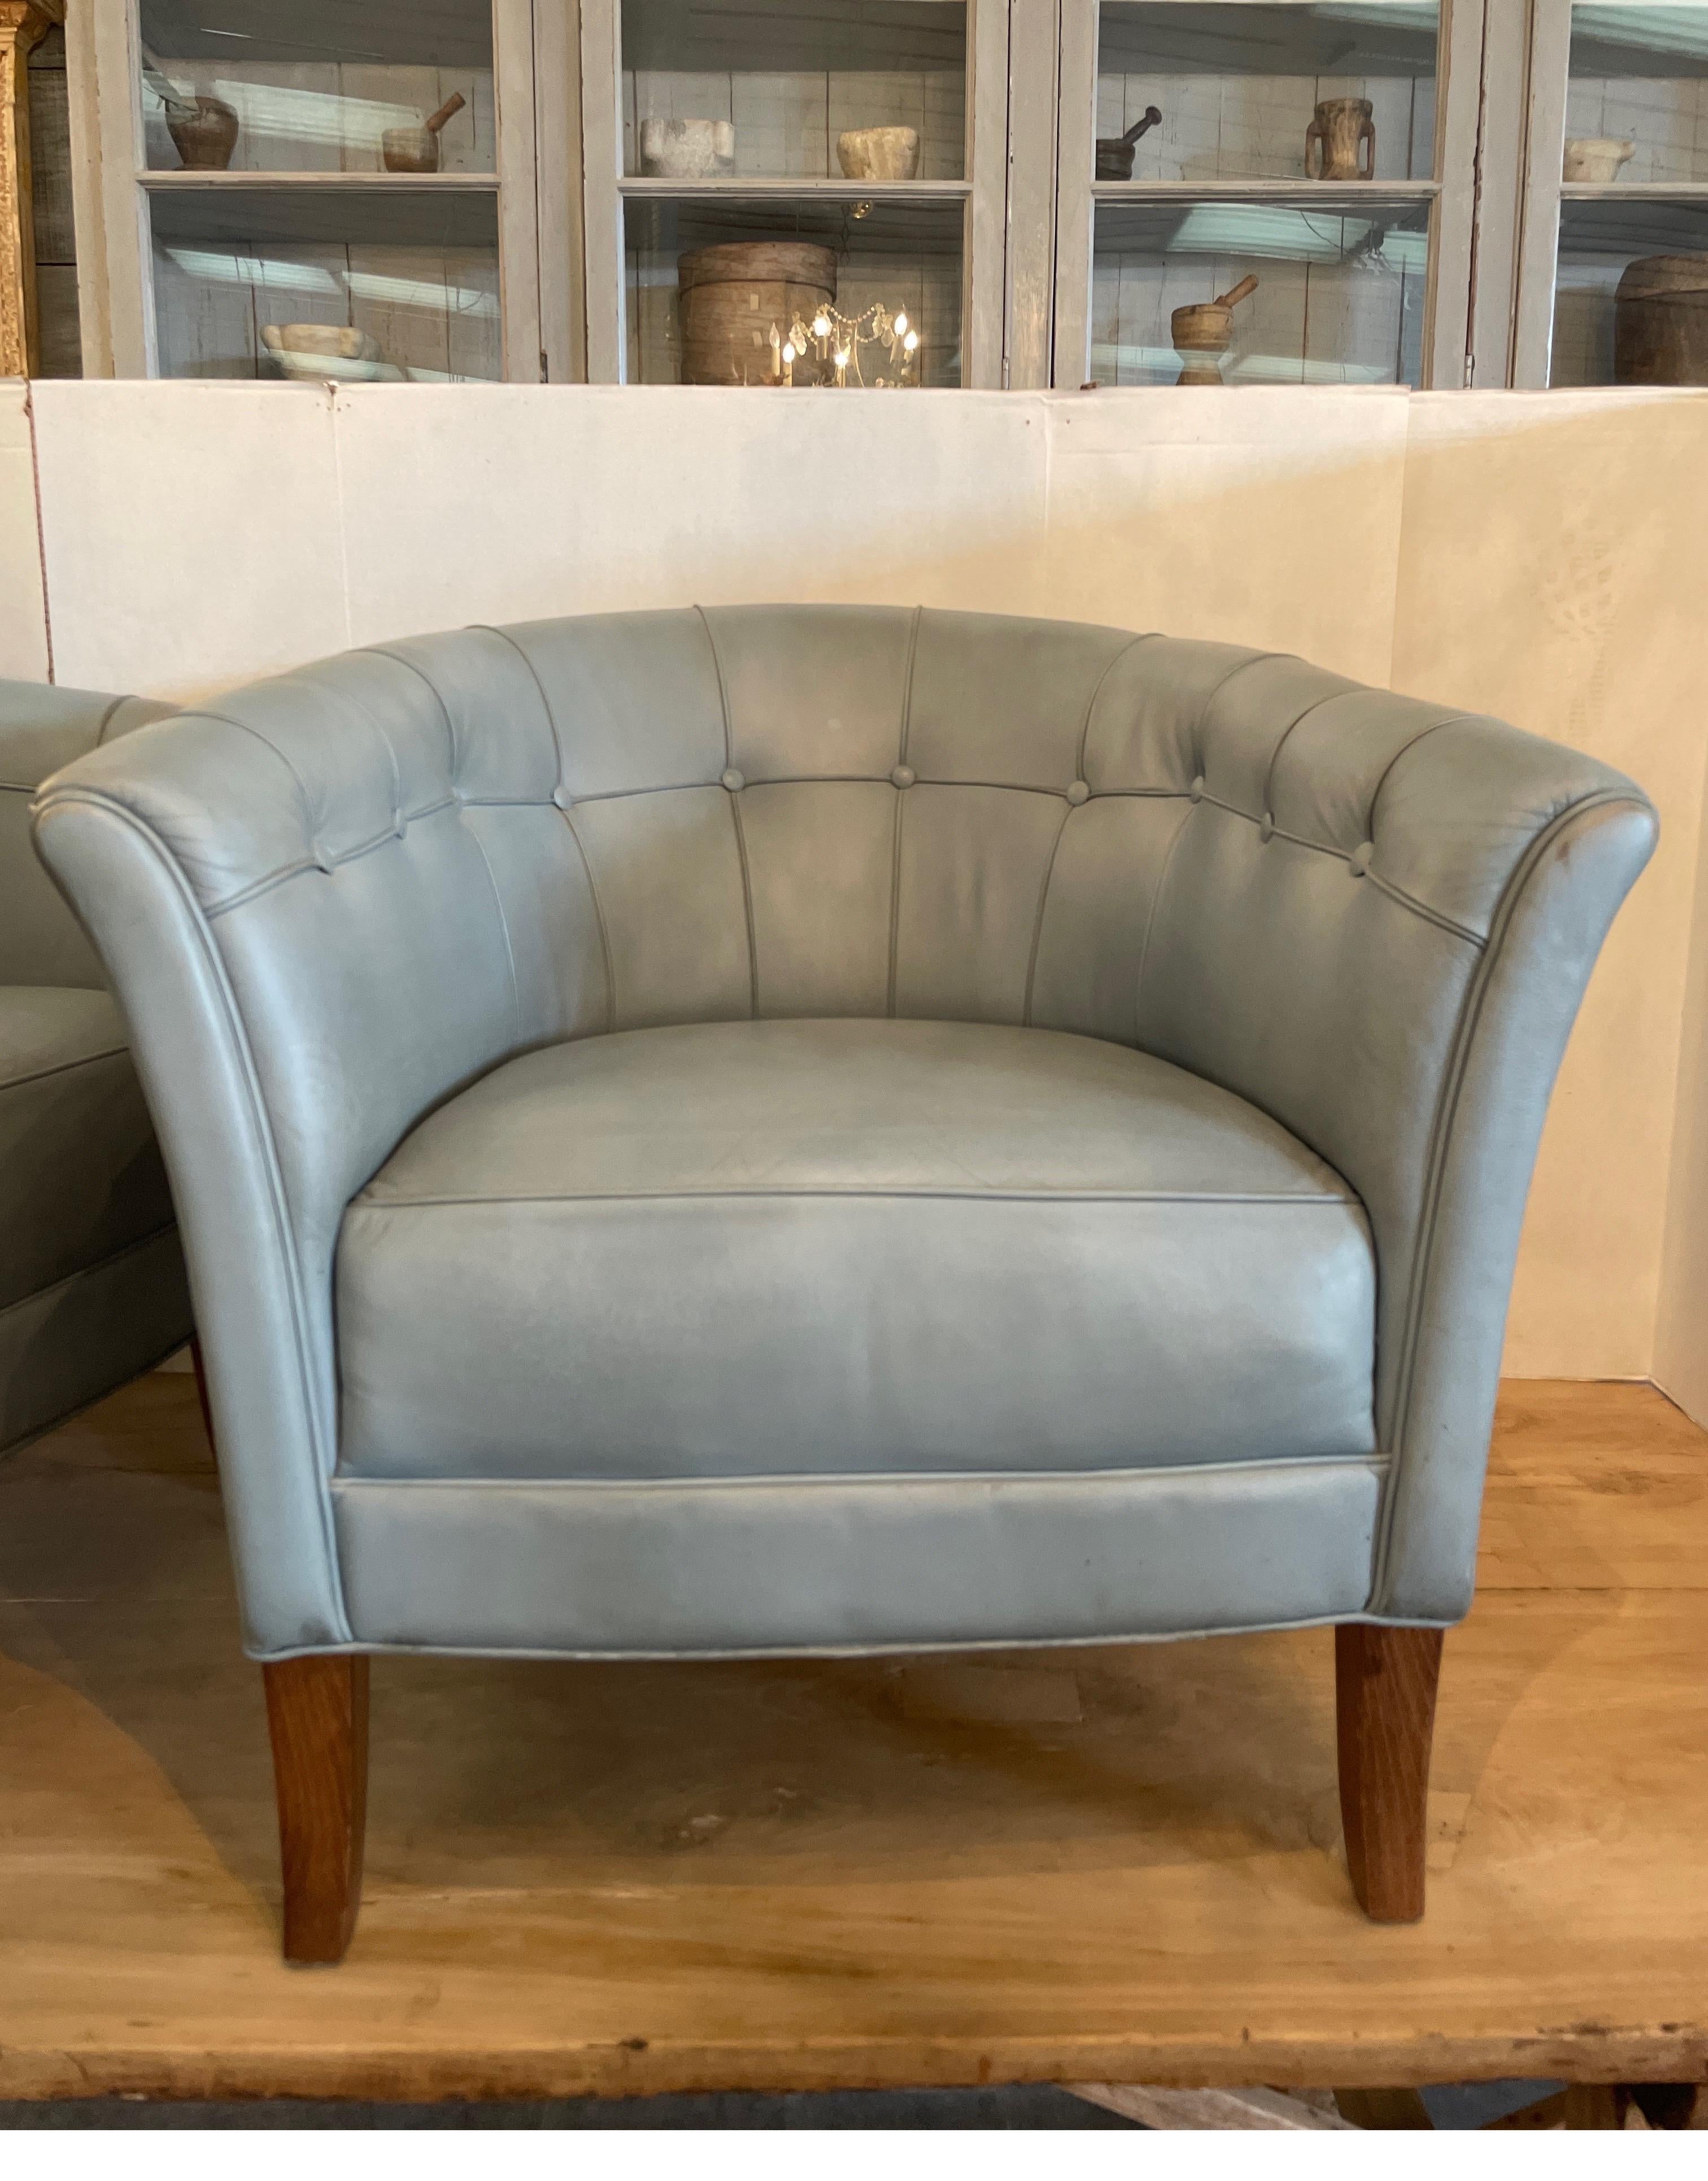 Schwedischer Designer Arnie Norell geboren 1917 gestorben 1970er Jahre Mitte des Jahrhunderts Stühle mit original Leder in einem Immergrün blau / grau . Diese Stühle, die Lord-Stühle genannt werden, sind sehr bequem und in gutem Zustand.  Die